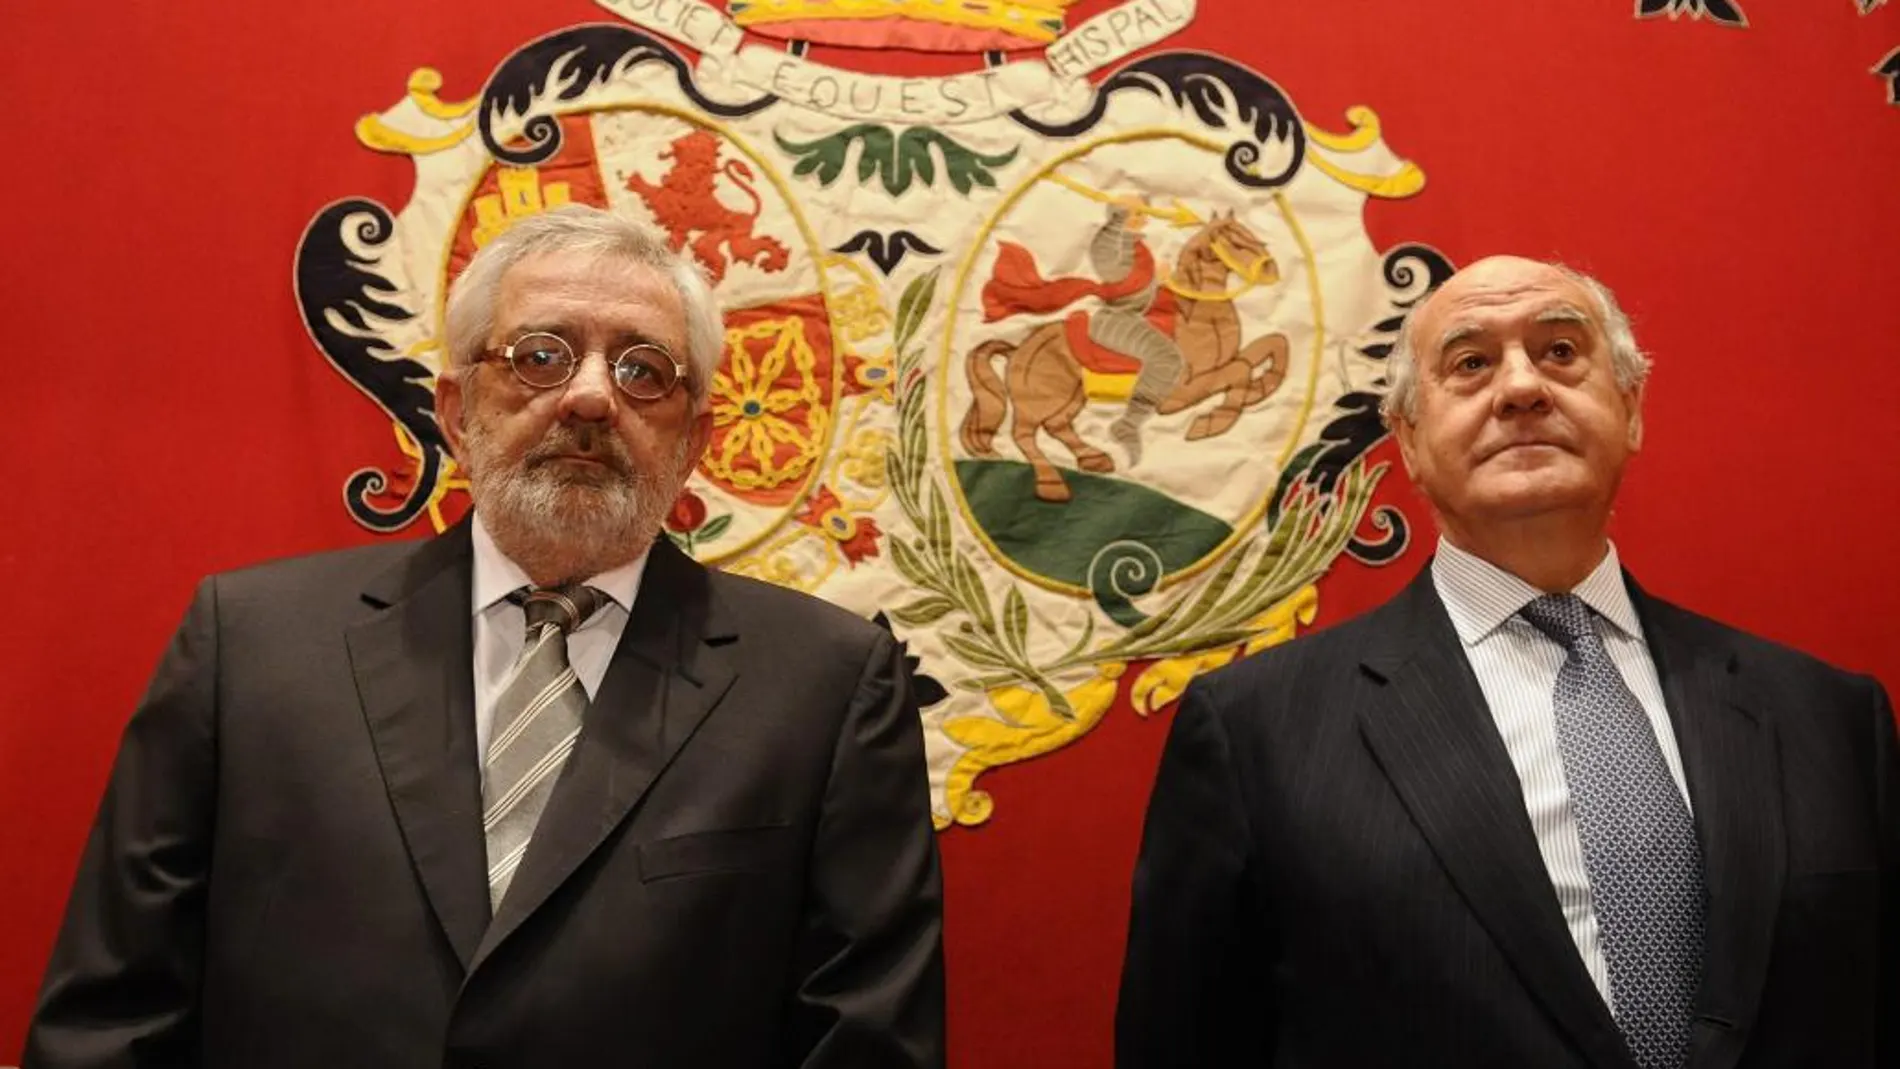 Eduardo Canorea y Ramón Valencia, gerentes de la empresa Pagés